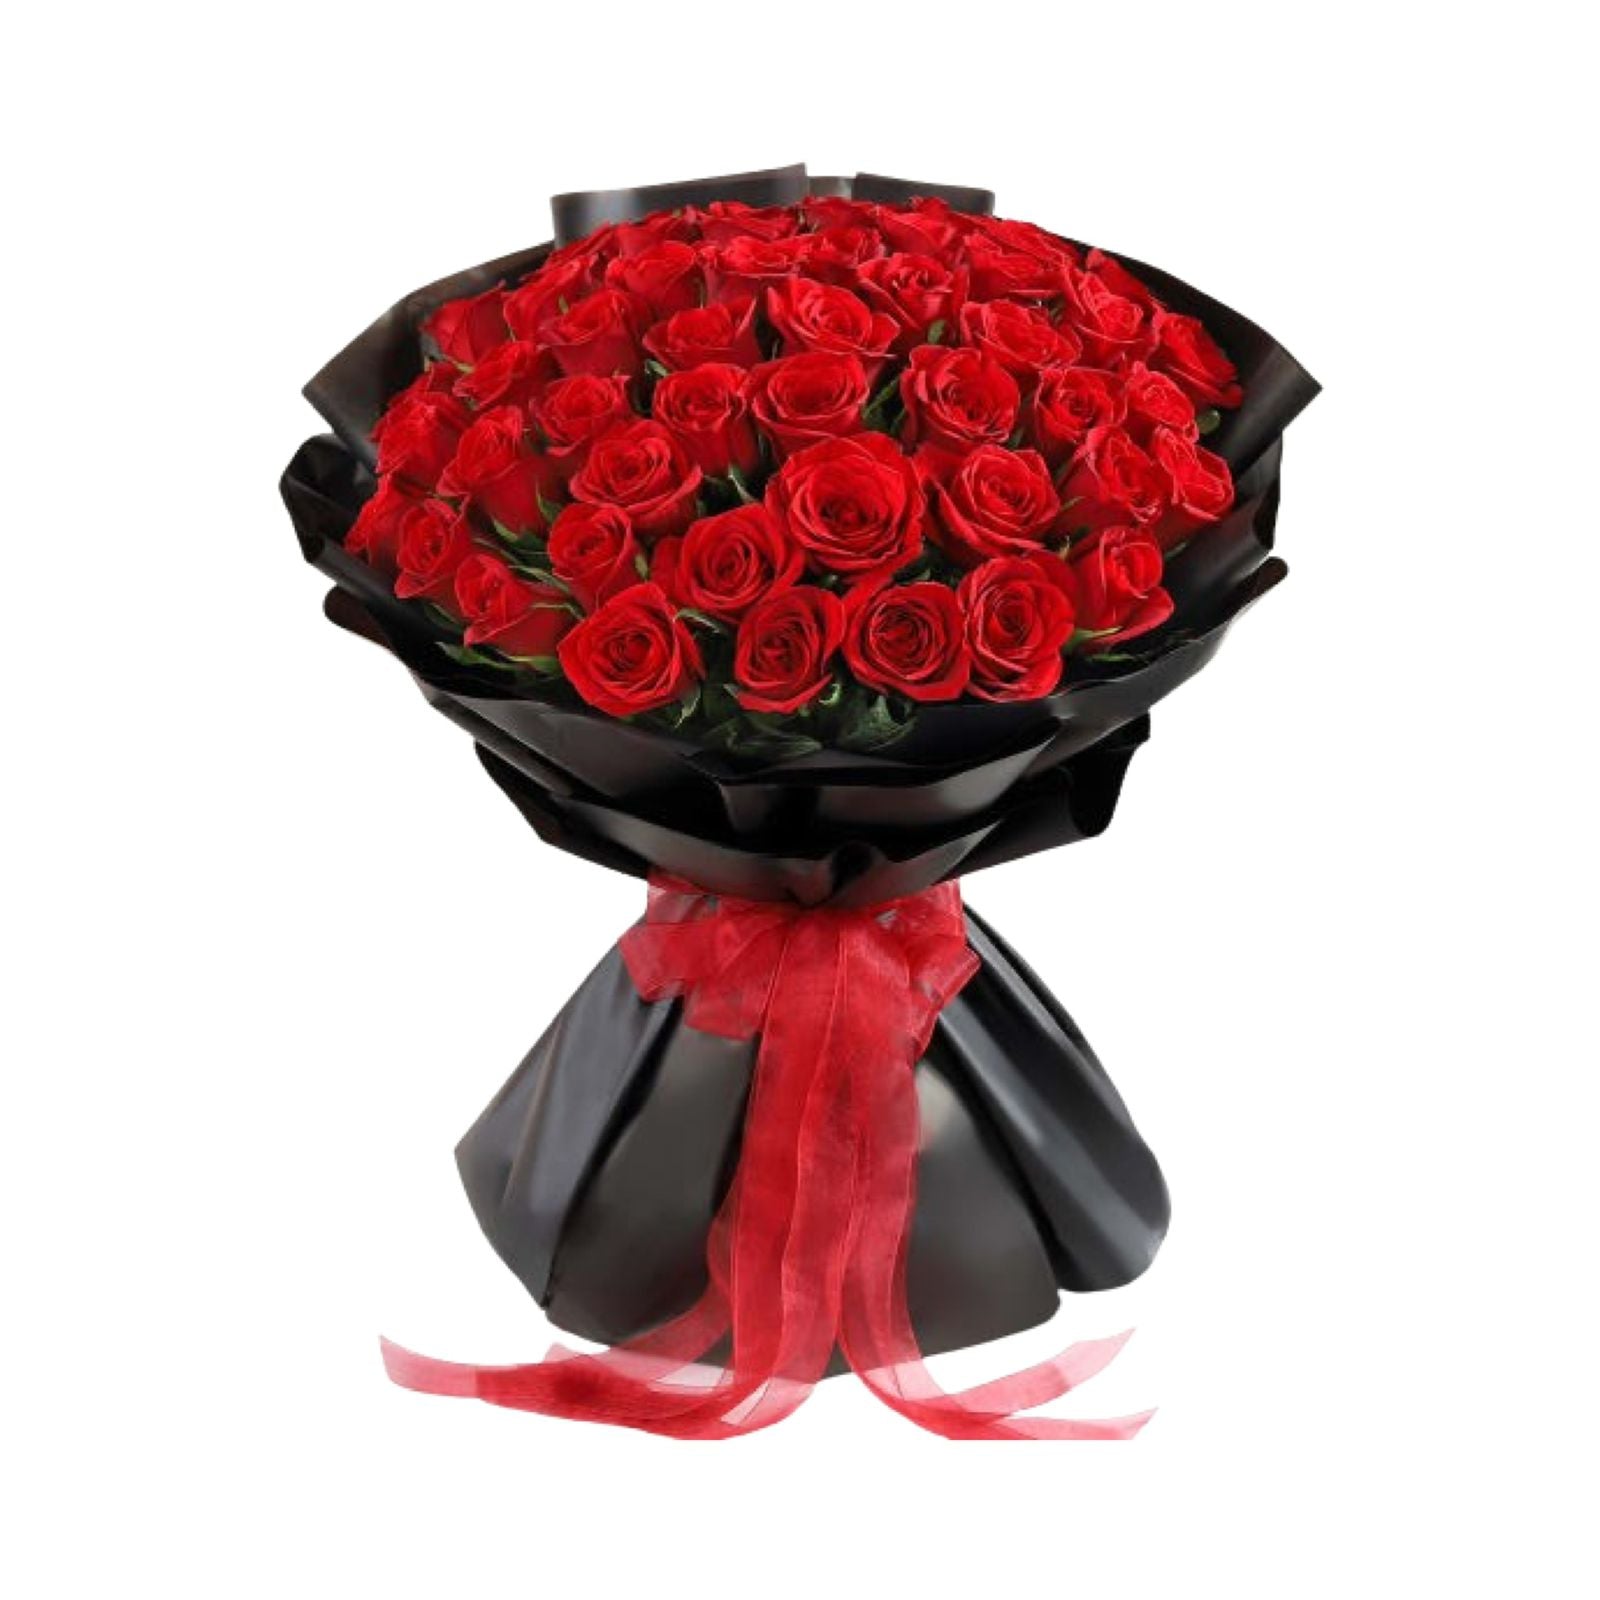 50 Red Roses Signature Bouquet